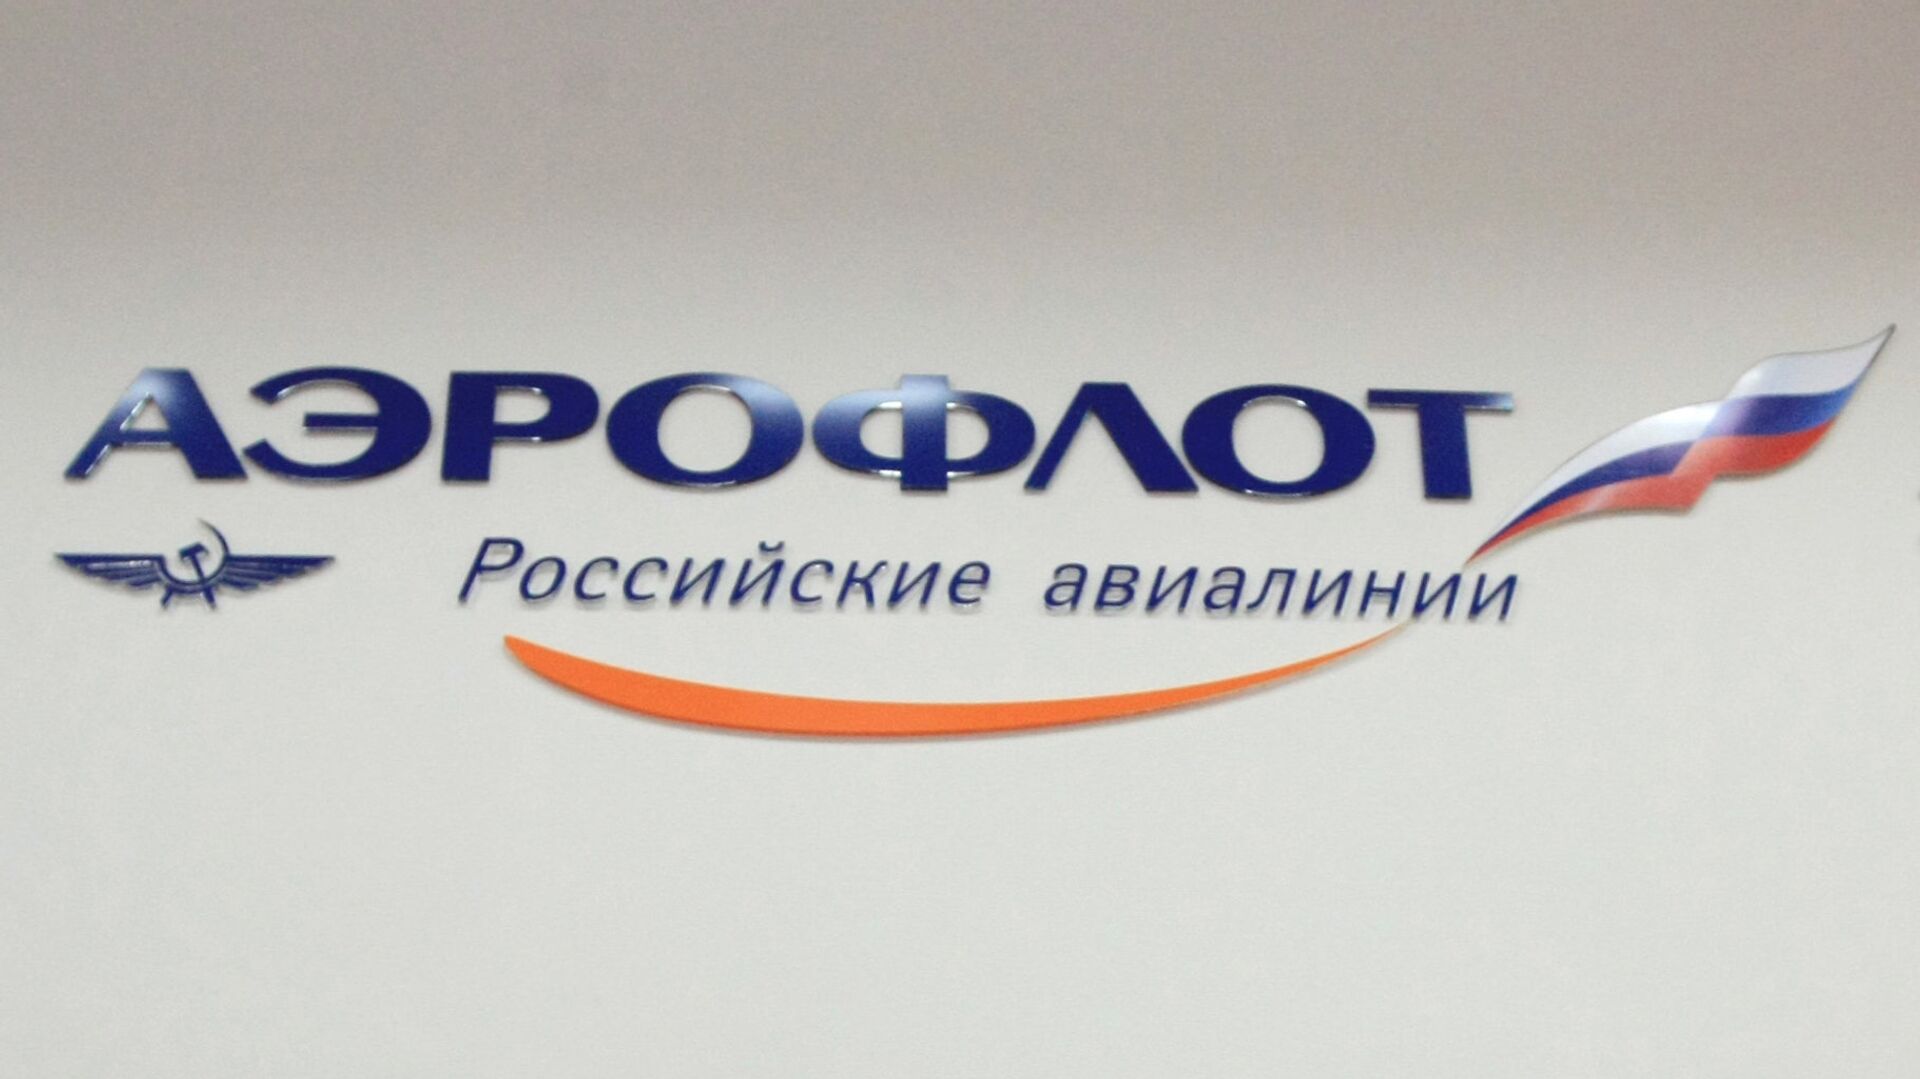 Компания Аэрофлот - Российские авиалинии3